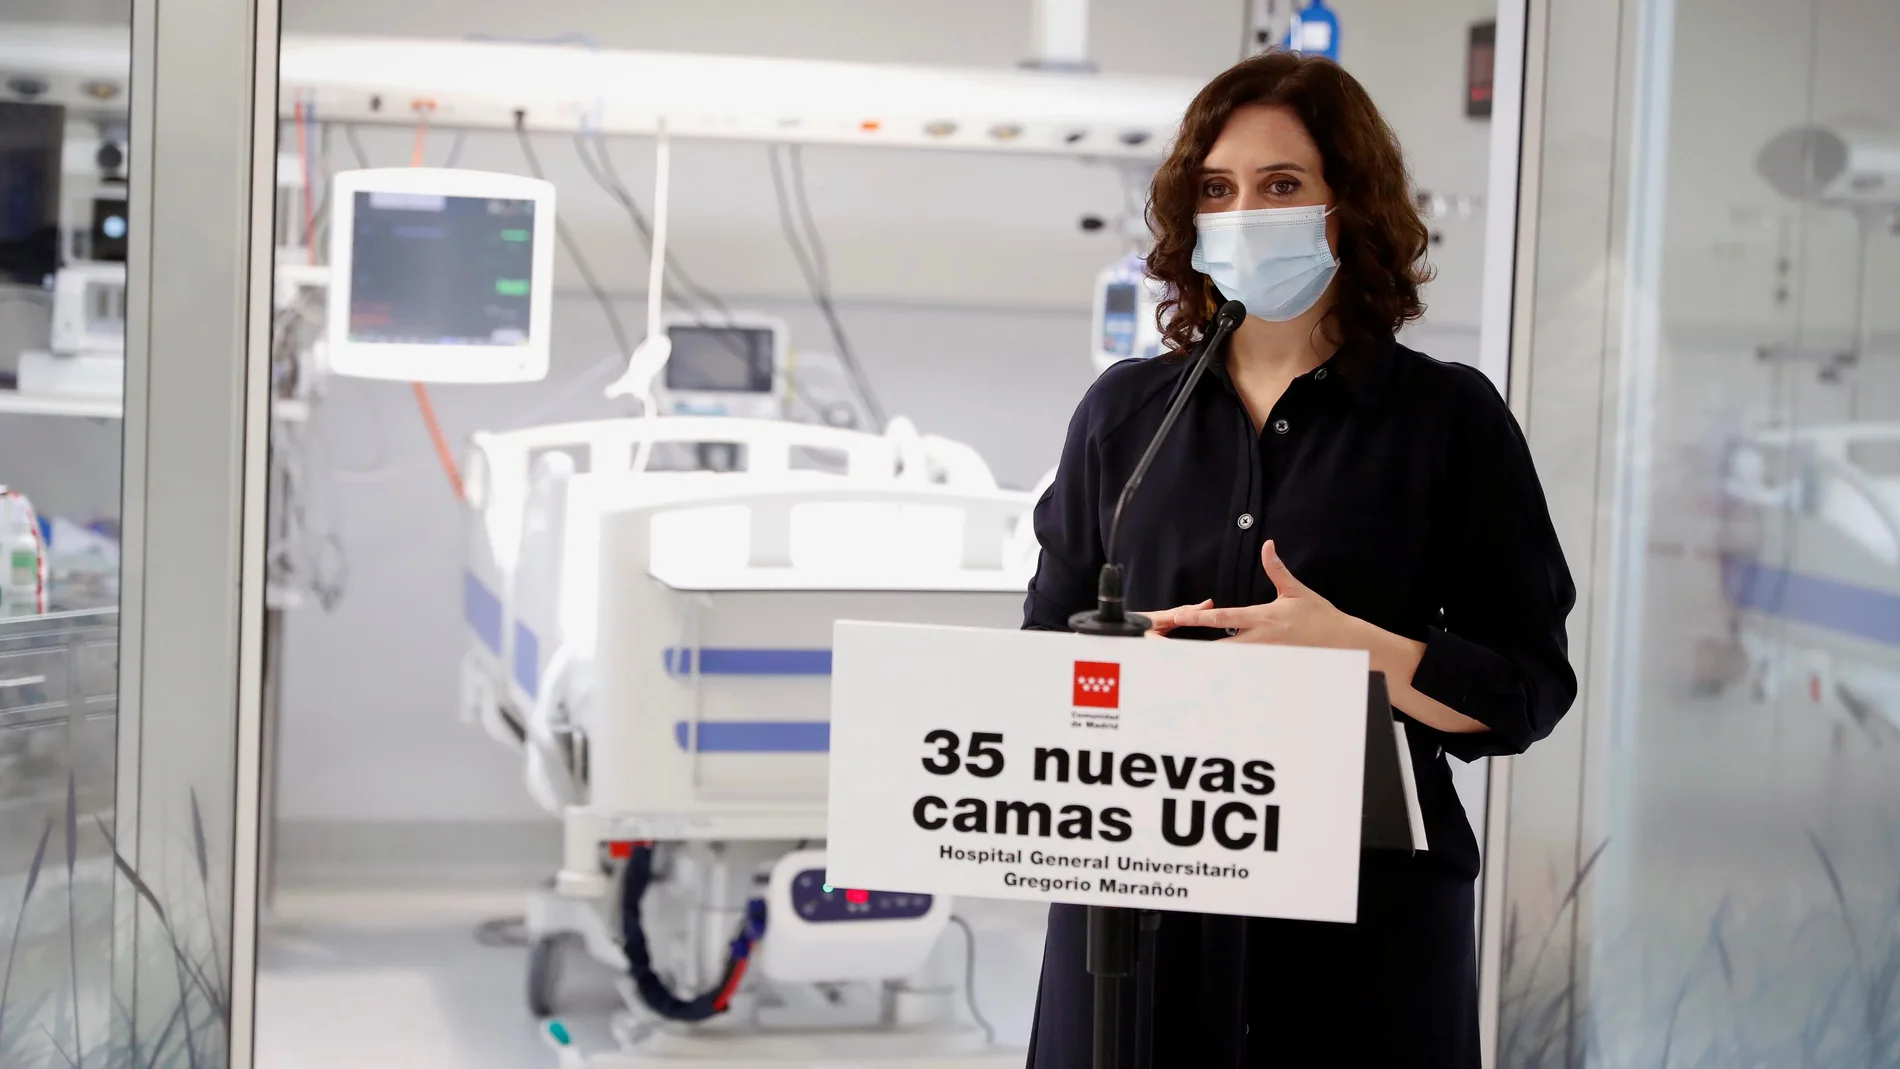 La presidenta de la Comunidad de Madrid, Isabel Díaz Ayuso, hace unas declaraciones mientras visita este martes la nueva Unidad de Cuidados Intensivos del Hospital General Universitario Gregorio Marañón